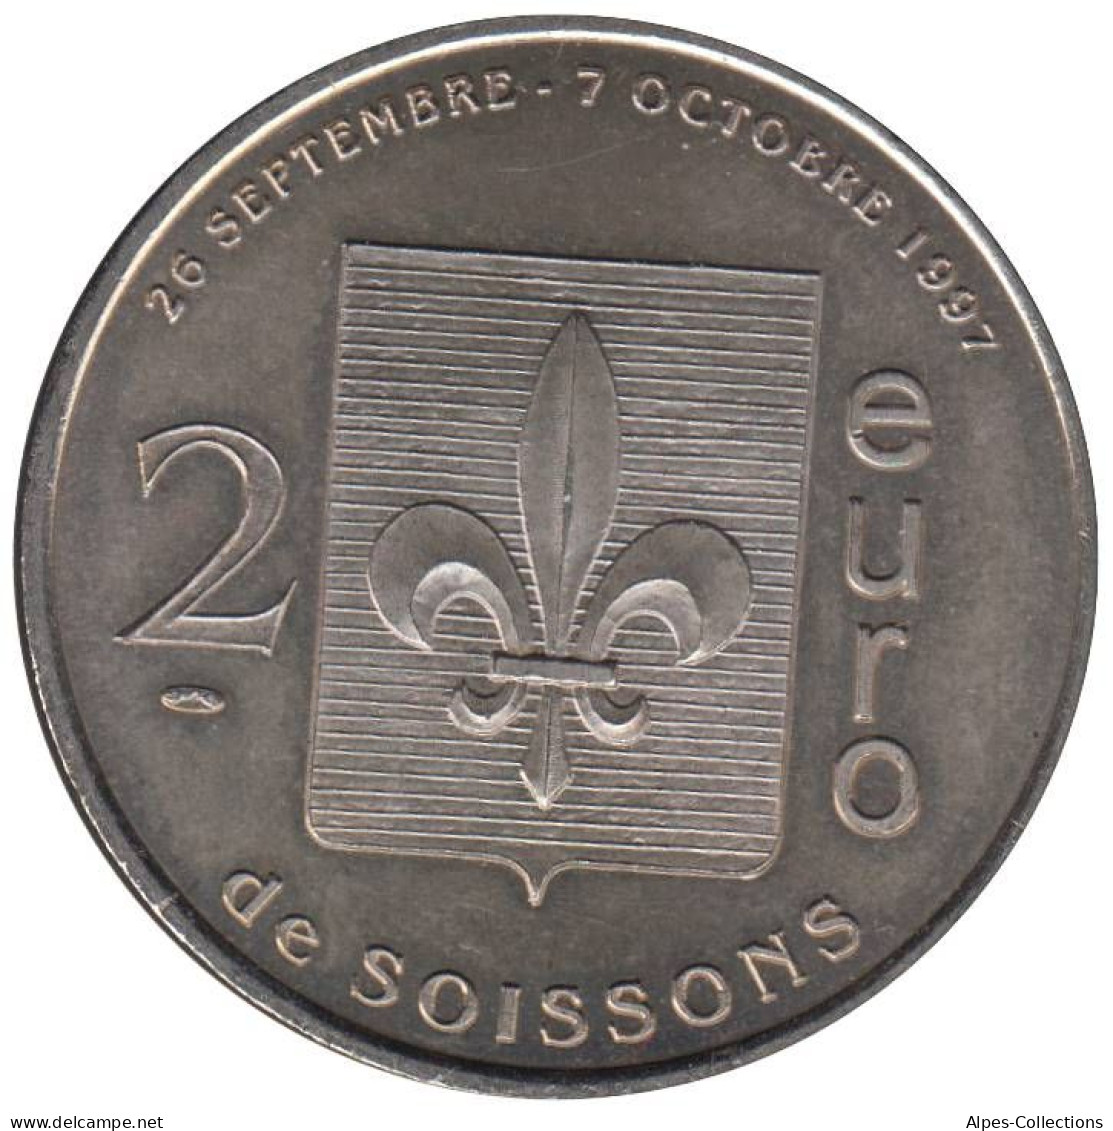 SOISSONS - EU0020.1 - 2 EURO DES VILLES - Réf: T392 - 1997 - Euro Der Städte